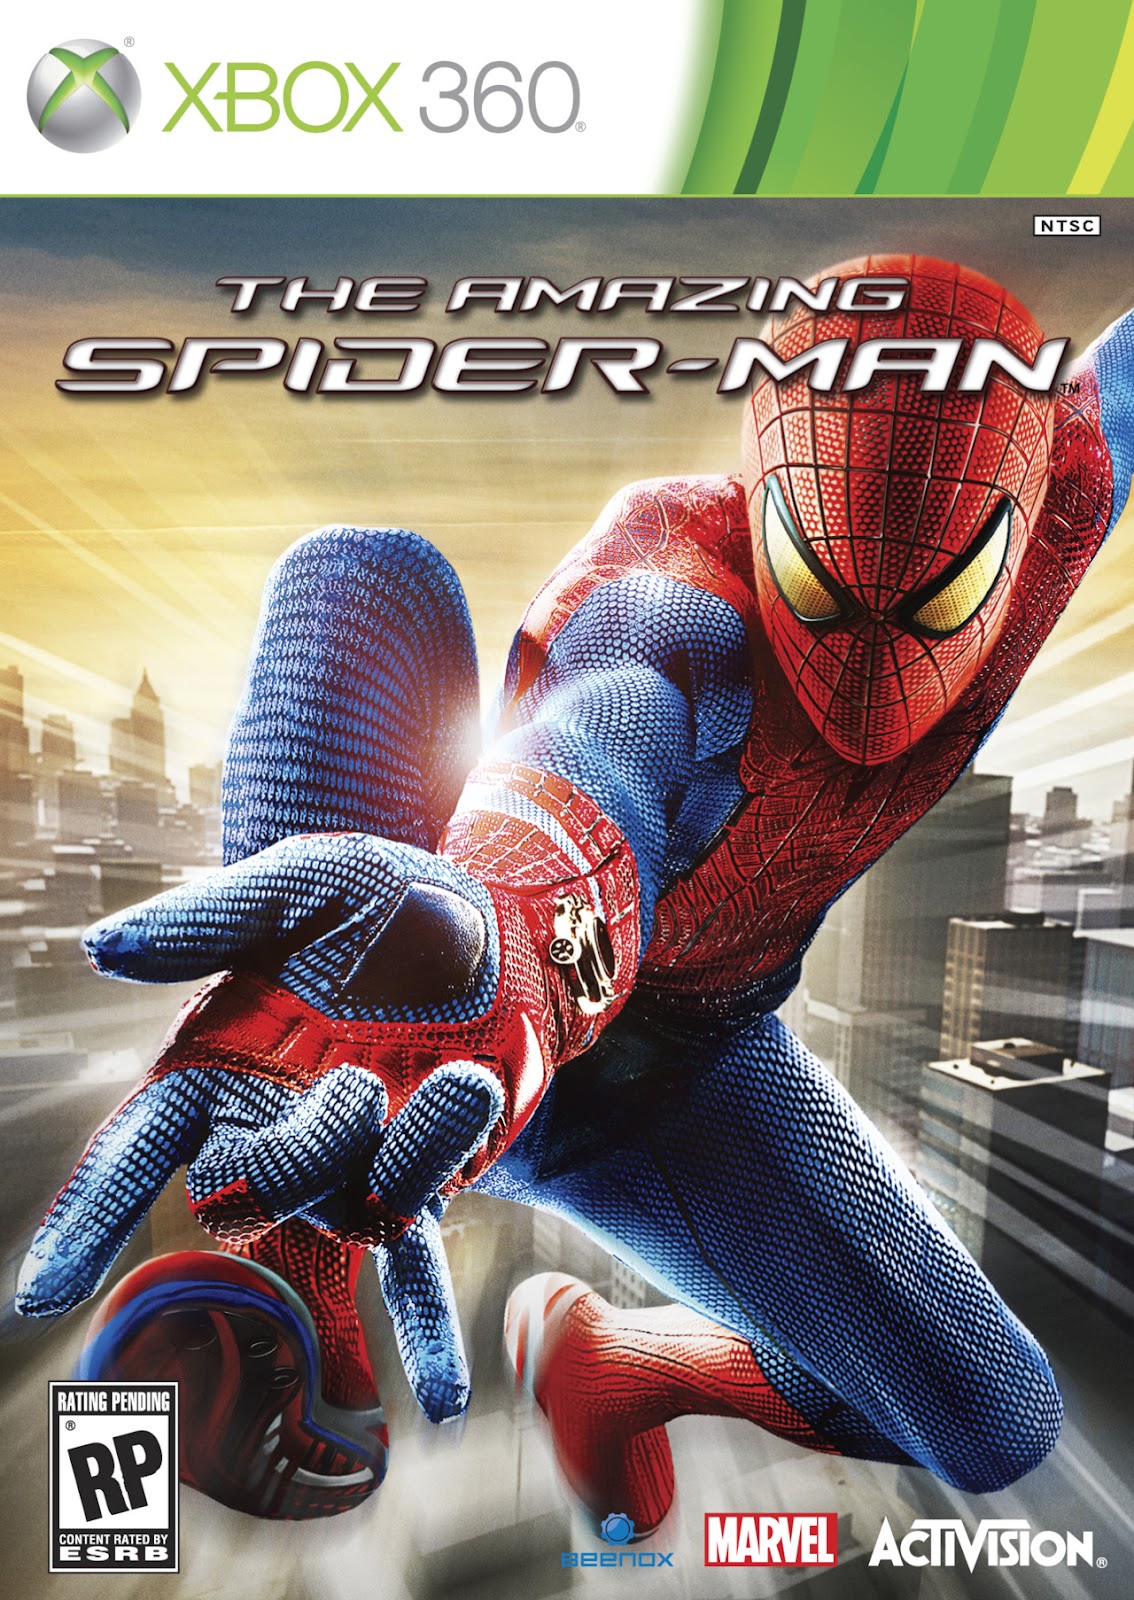 Sentido Aranha - quais seu jogos favoritos do homem aranha? > spider man  enter electro: ps1 (2000) > spider man the movie: ps2 (2002) > spider man 2  the movie: ps2 (2004) >